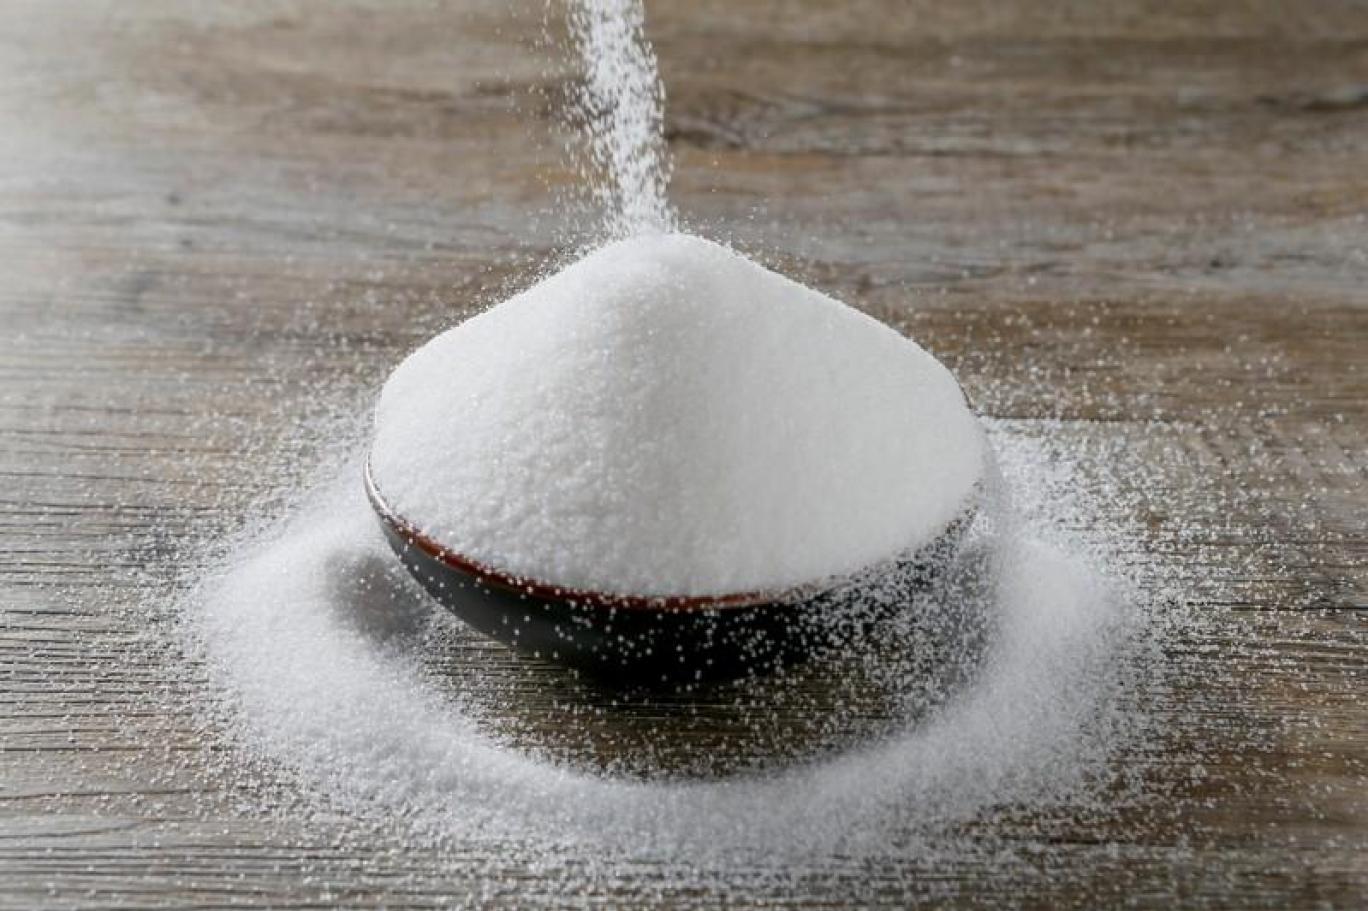 استنشاق السكر قد يكون وسيلة جيدة لمعالجة التهابات الرئة بحسب العلماء